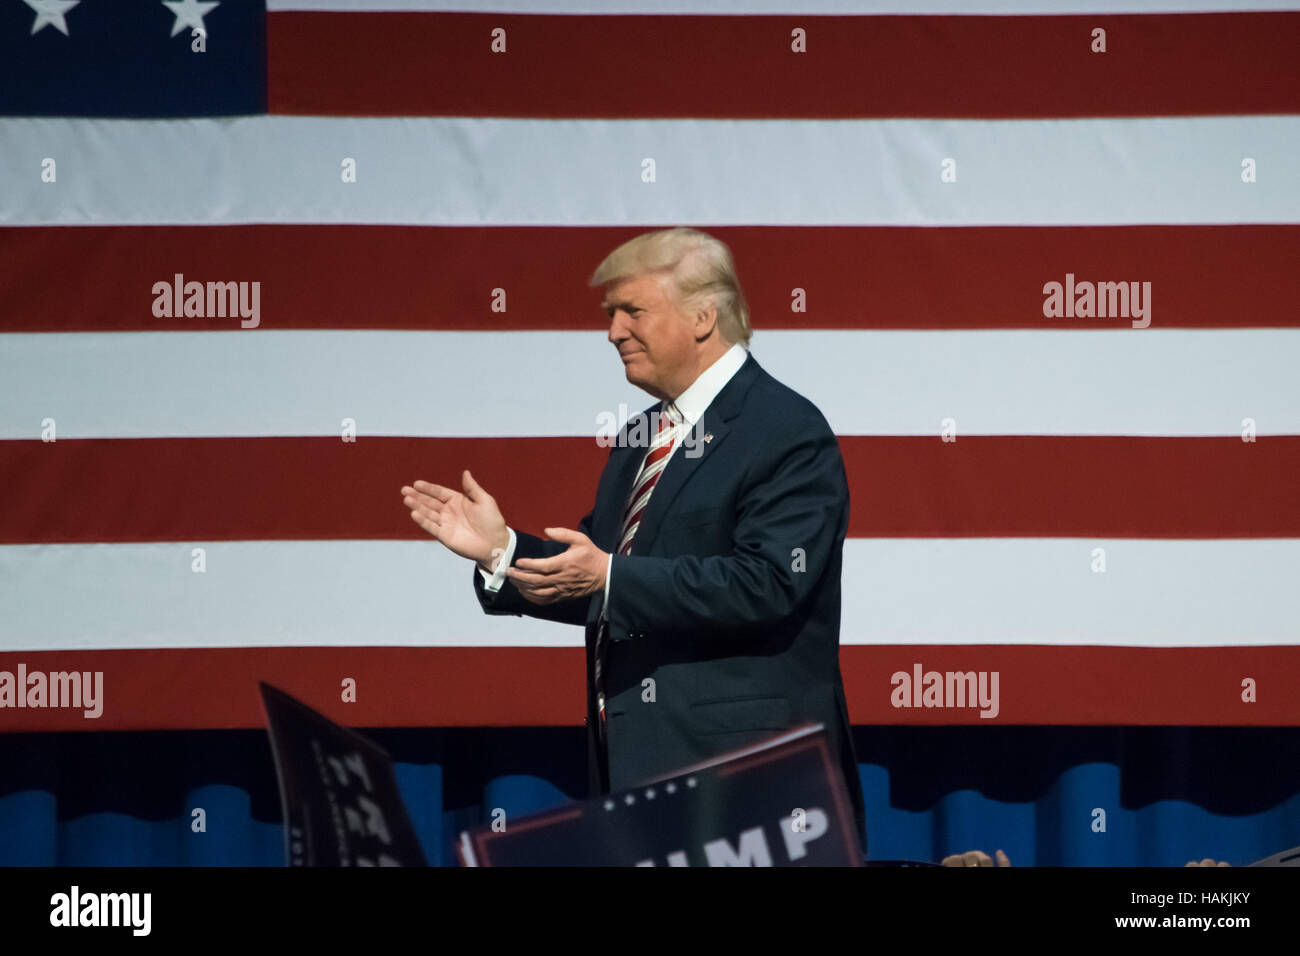 Republikanische Präsidentschafts Kandidat Donald Trump zu Fuß auf der Bühne Beifall der Menge in der Nähe der amerikanischen Flagge. Stockfoto